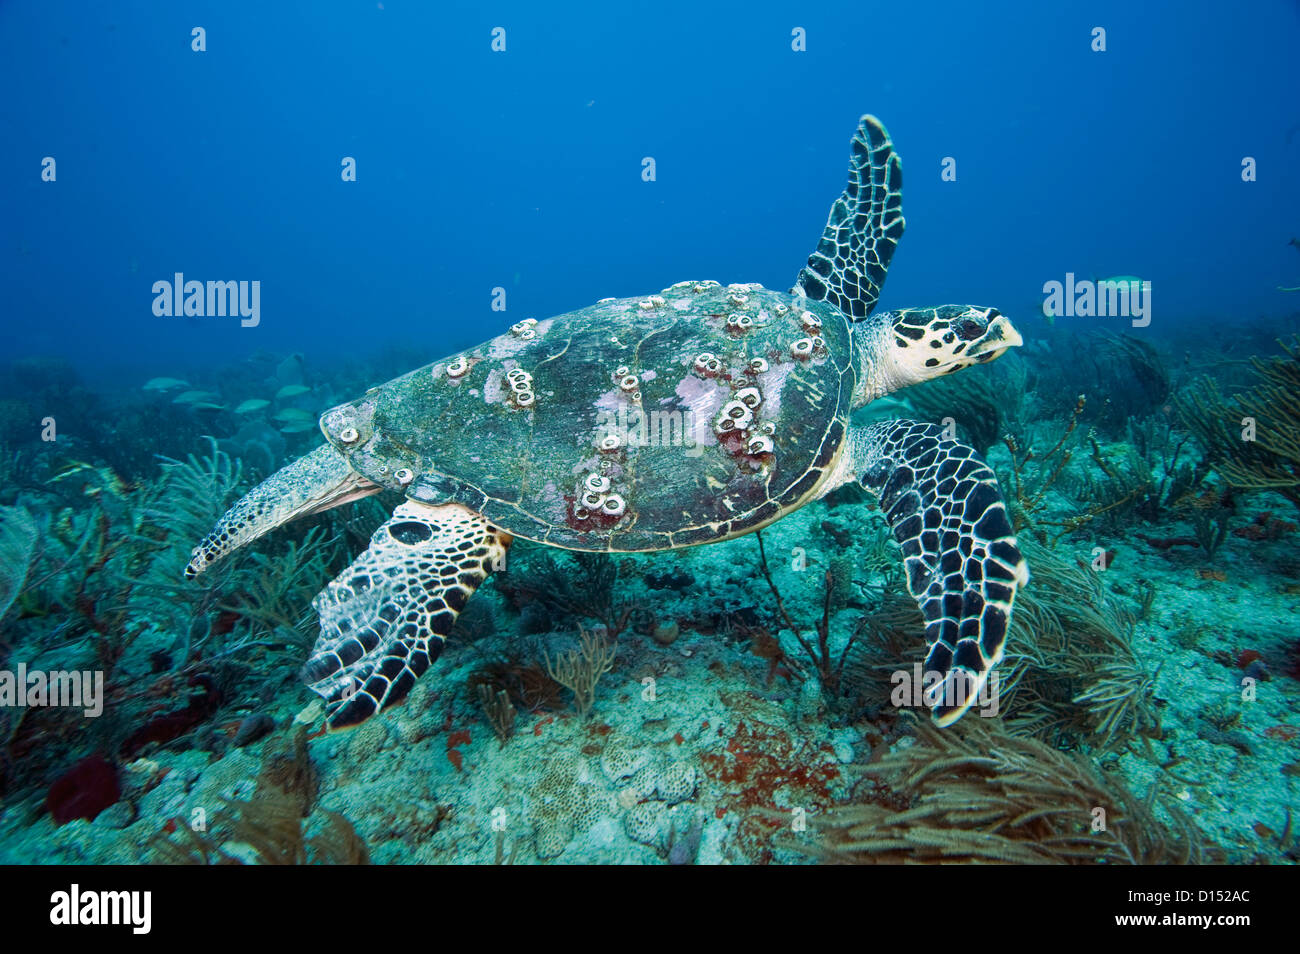 Sea Hawksbill Turtle, Eretmochelys Imbricata, fotografiert in Palm Beach County, FL. Karettschildkröten Leben ausschließlich auf die Korallenriffe Stockfoto